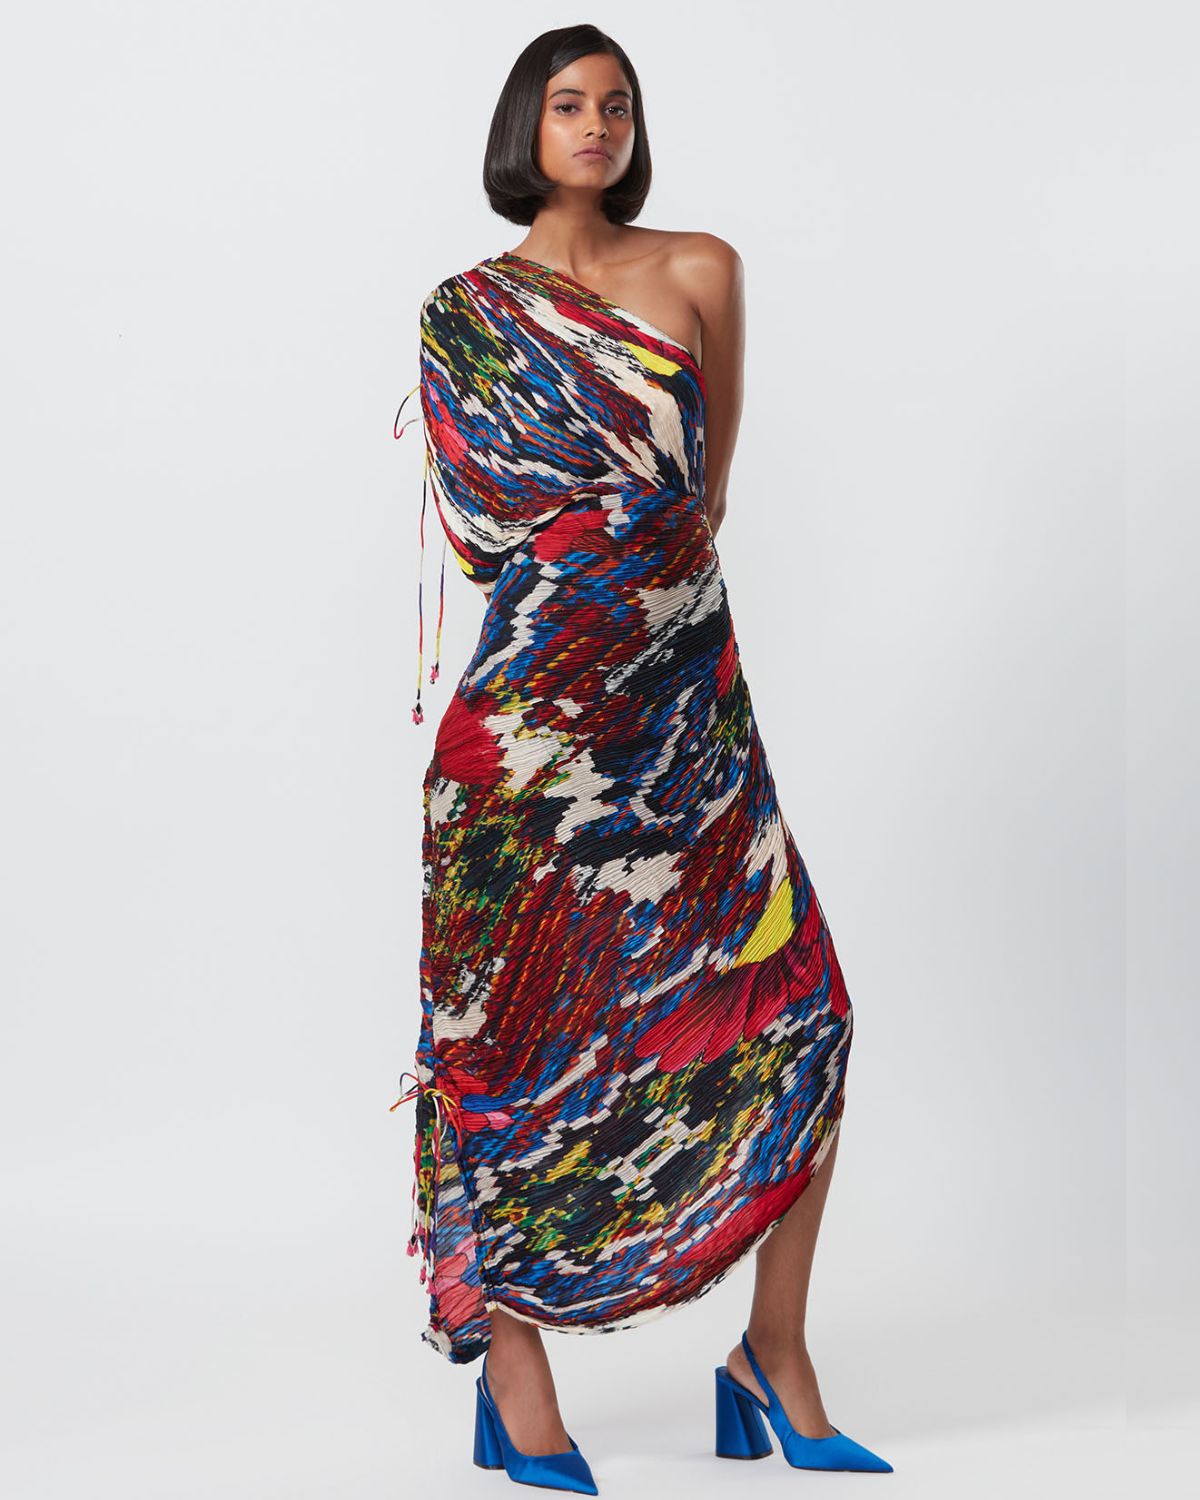 Multi-Colored Floral Printed Sari Dress